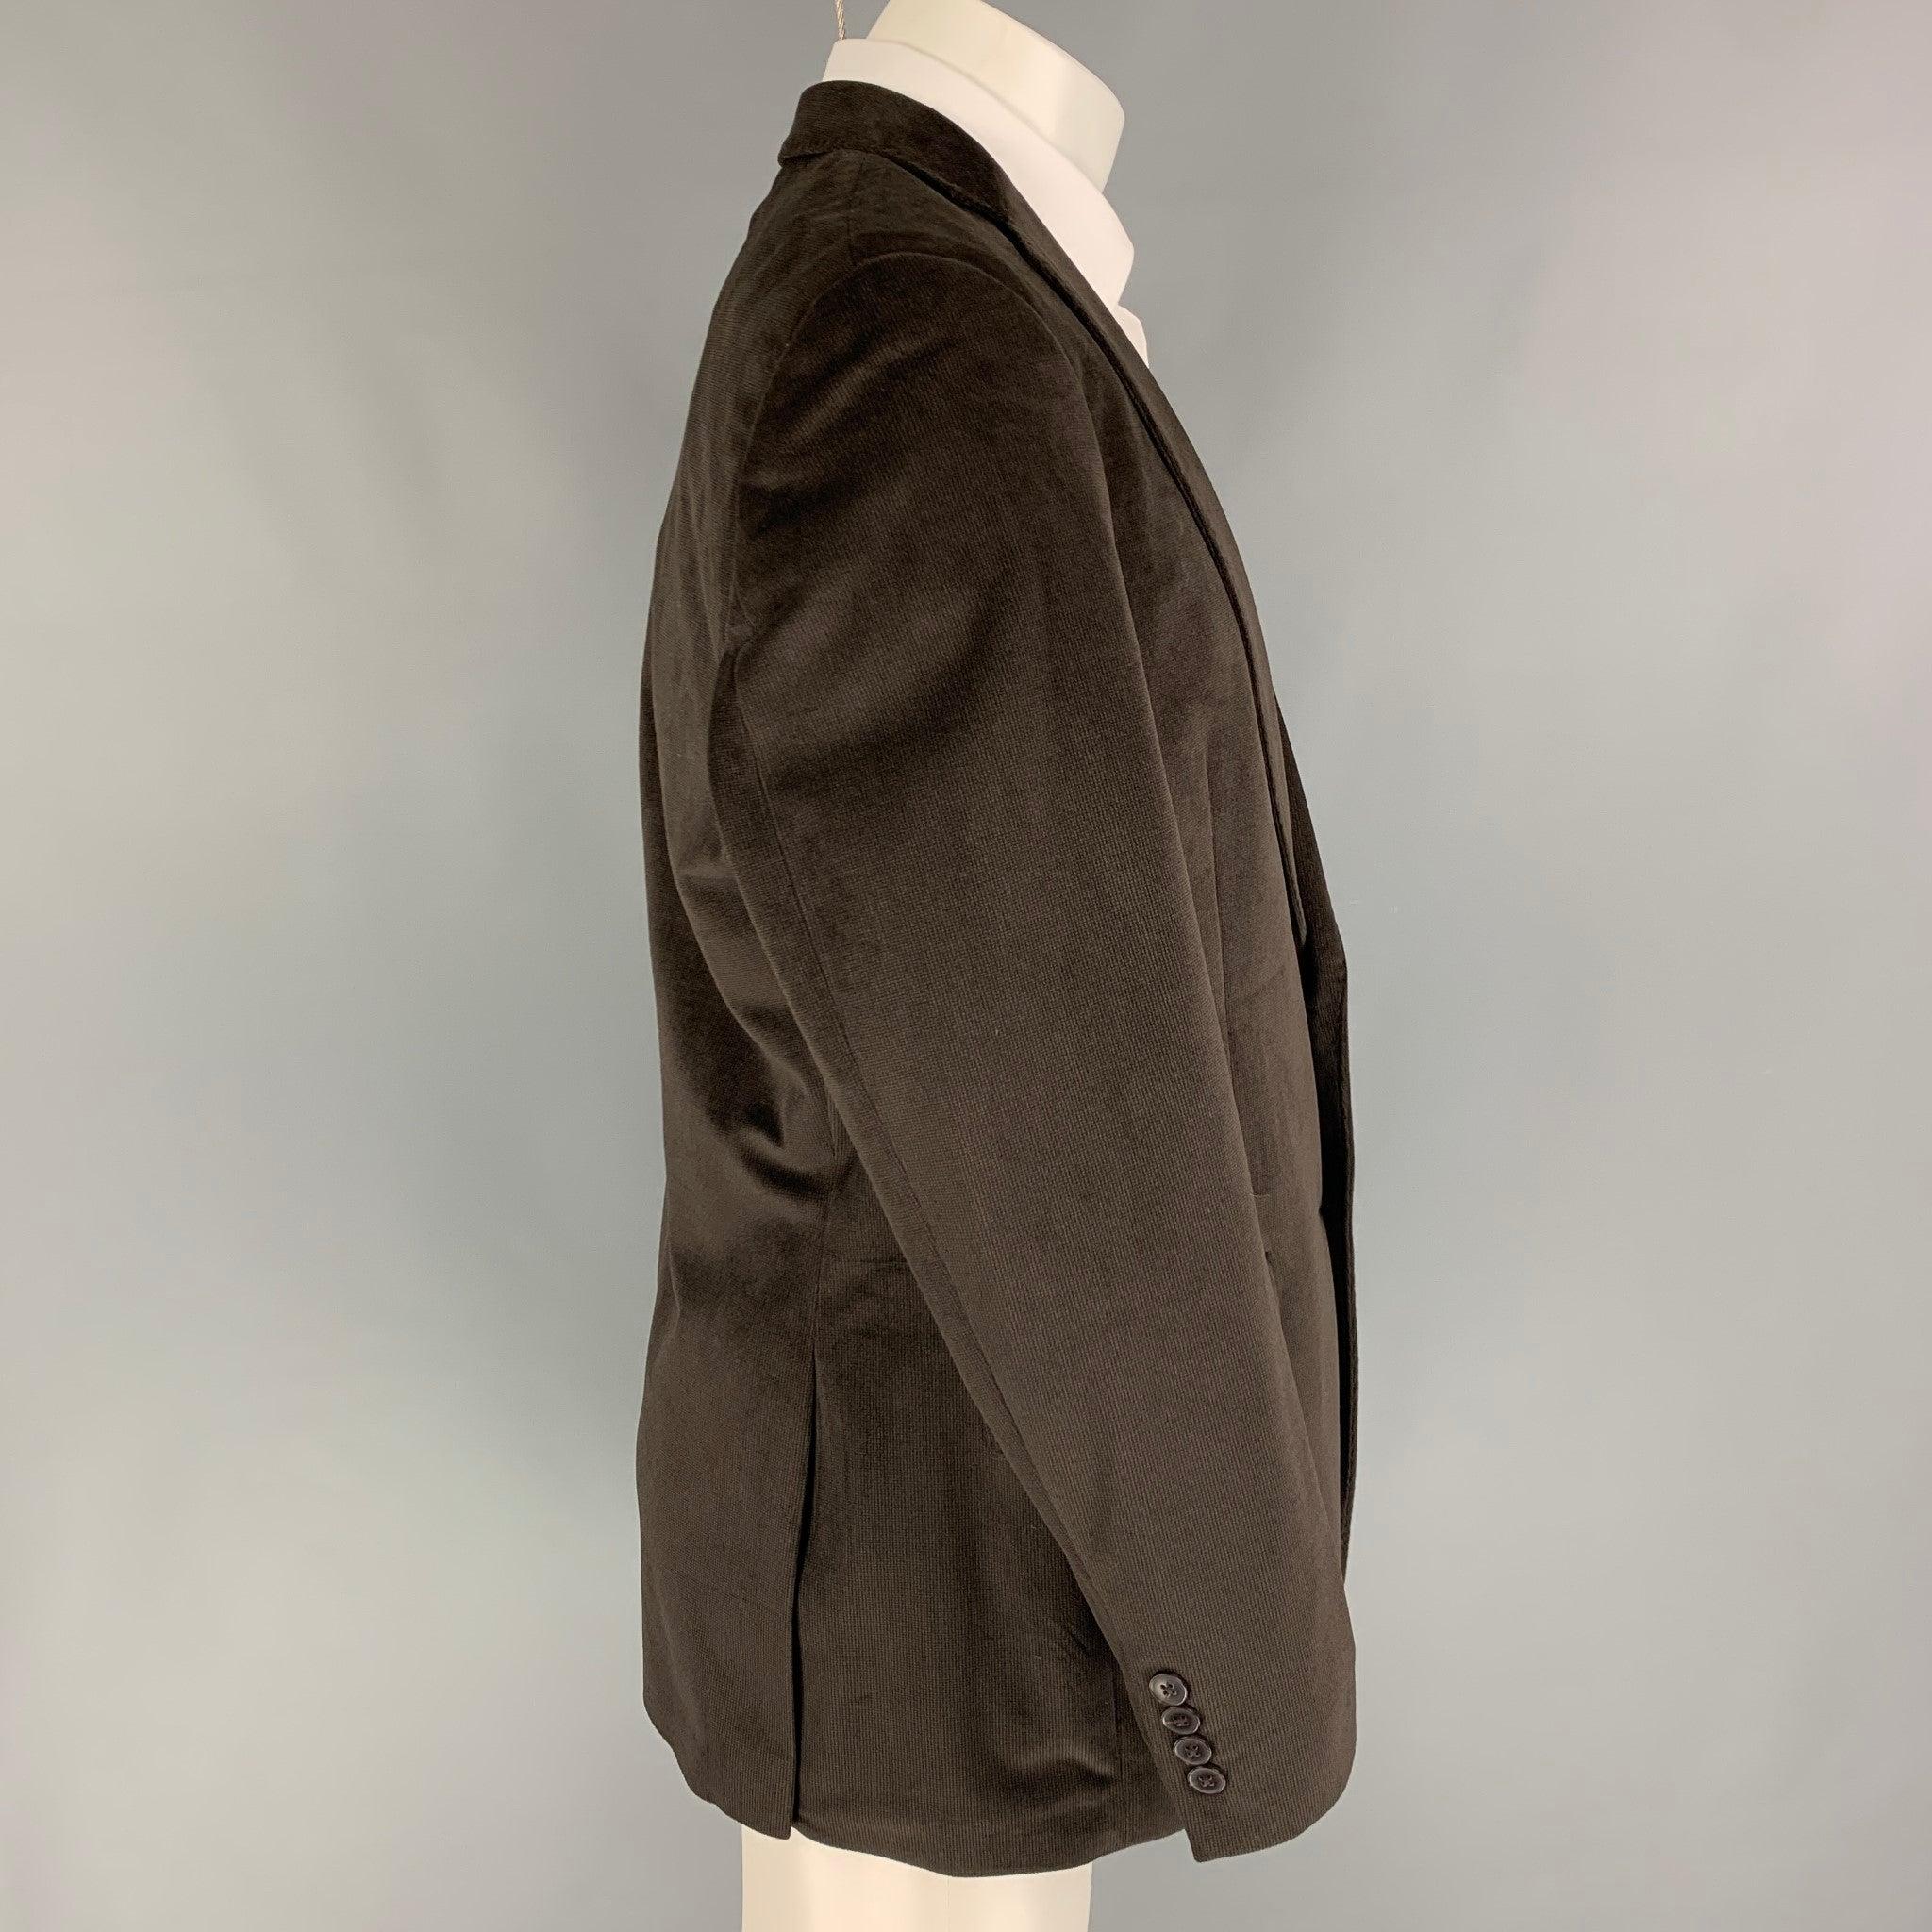 Le manteau de sport CALVIN KLEIN est en velours de polyester noir avec une doublure complète. Il présente un revers à cran, des poches à rabat, une double fente au dos et une fermeture à double bouton.
Très bien
Etat d'occasion. 

Marqué :   40 R 